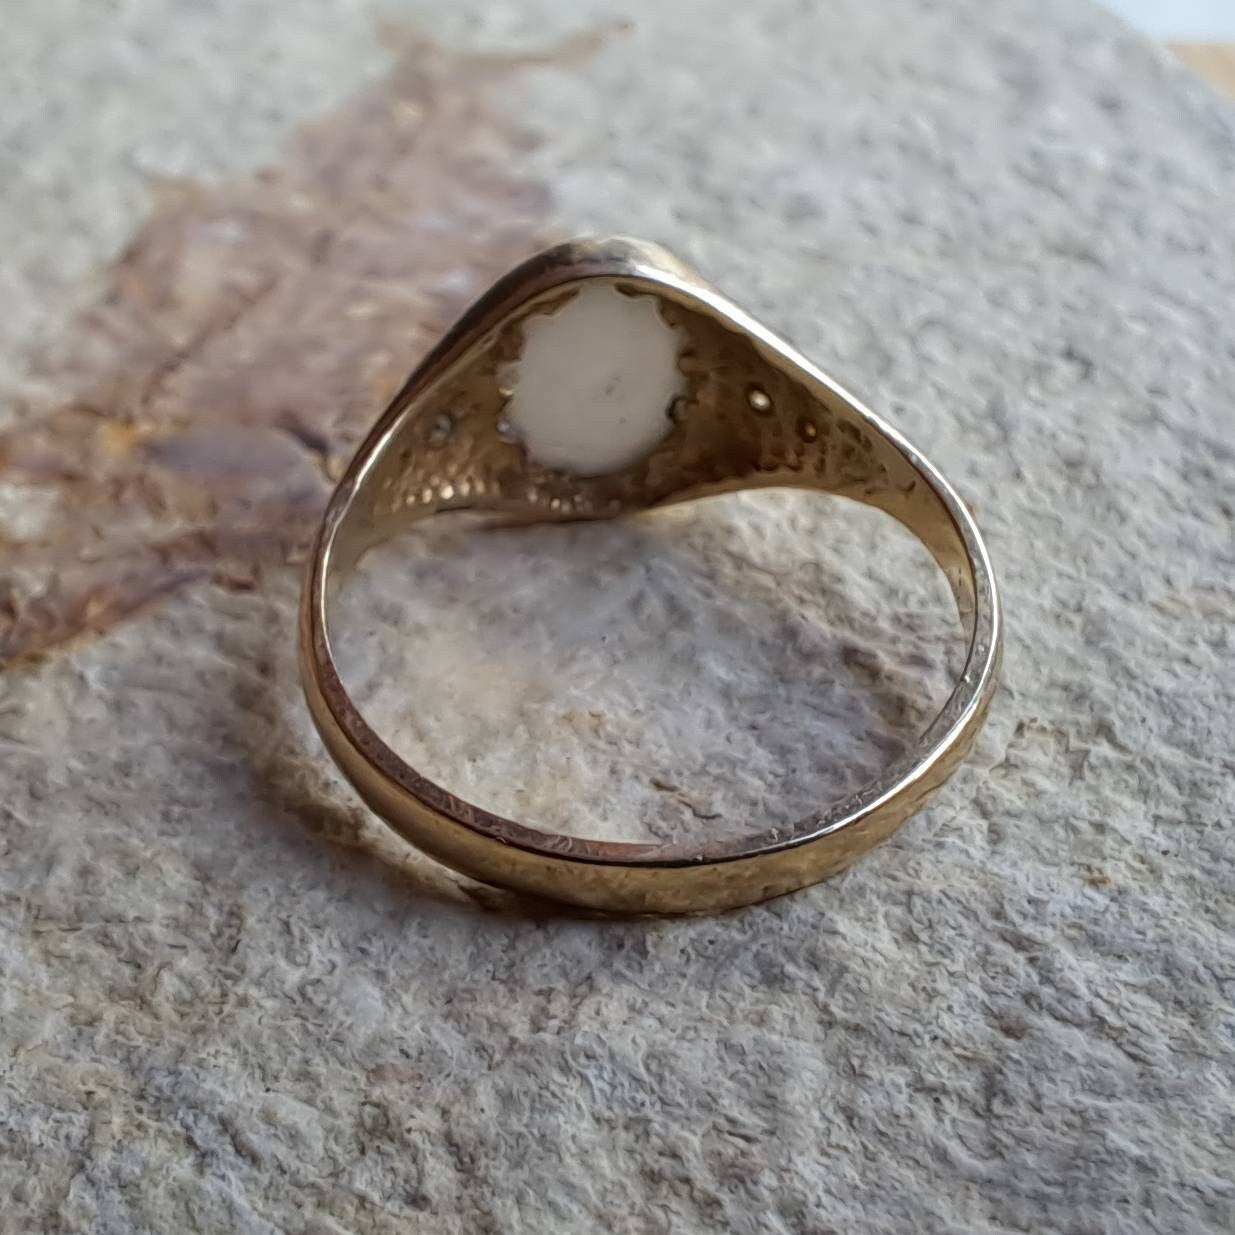 Vintage Opal Ring | Size L 1/2 | 9 Carat Gold